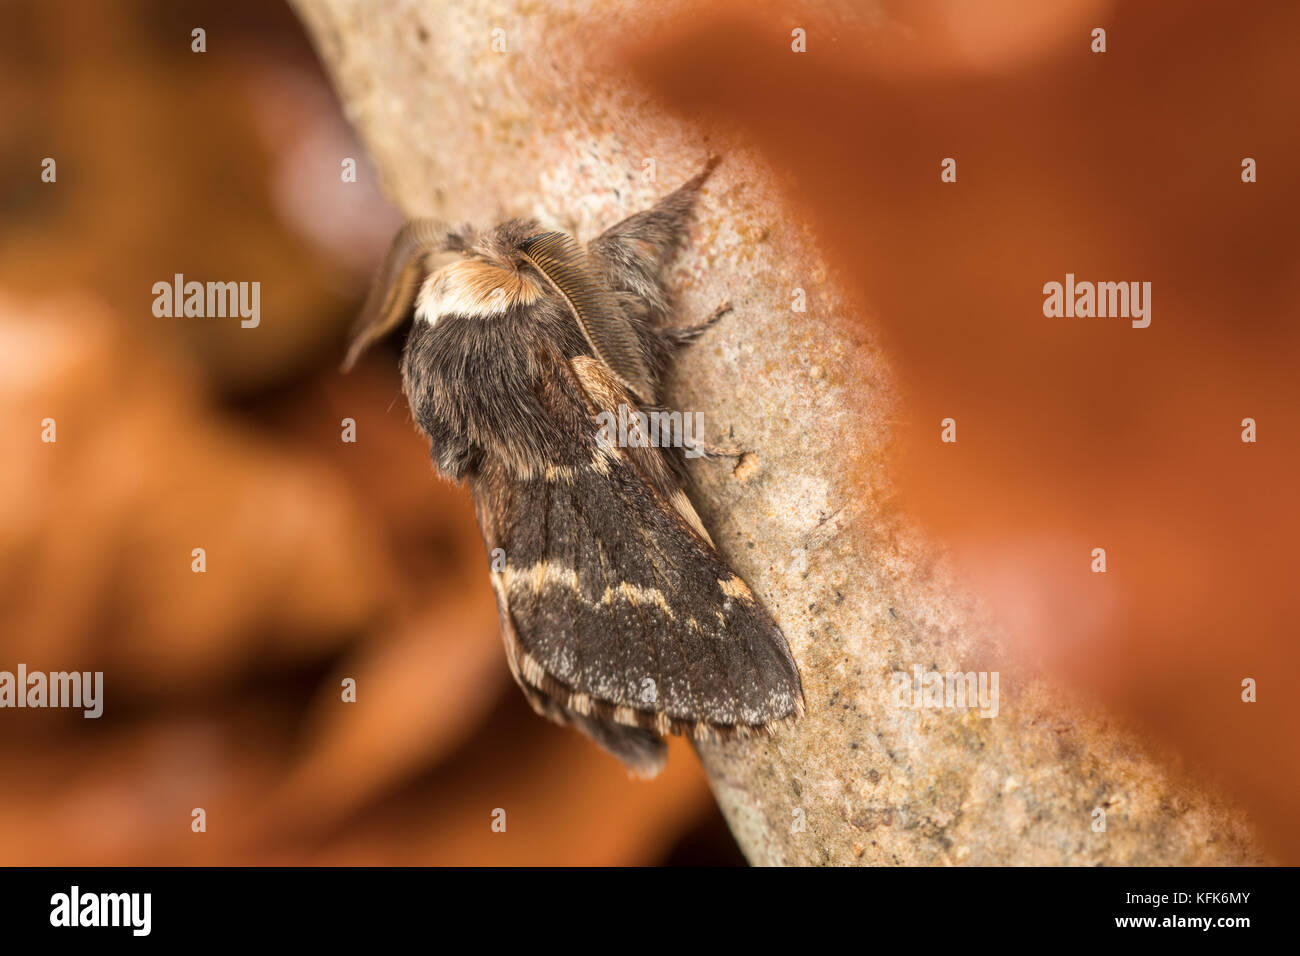 December Moth (Poecilocampa populi) Stock Photo